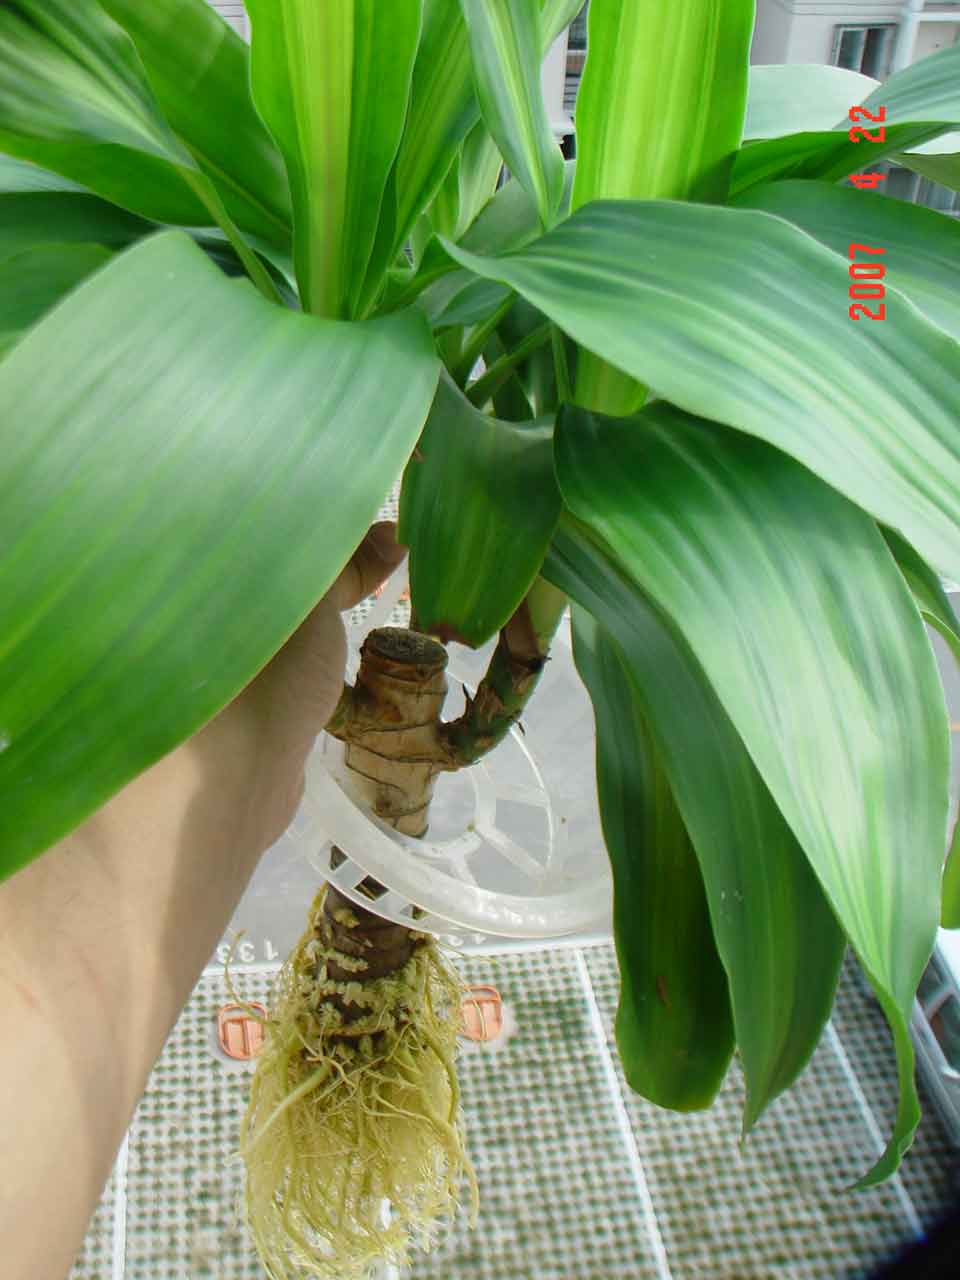 上照片:请喜欢植物的邻居们欣赏一下我家的"水培"巴西木